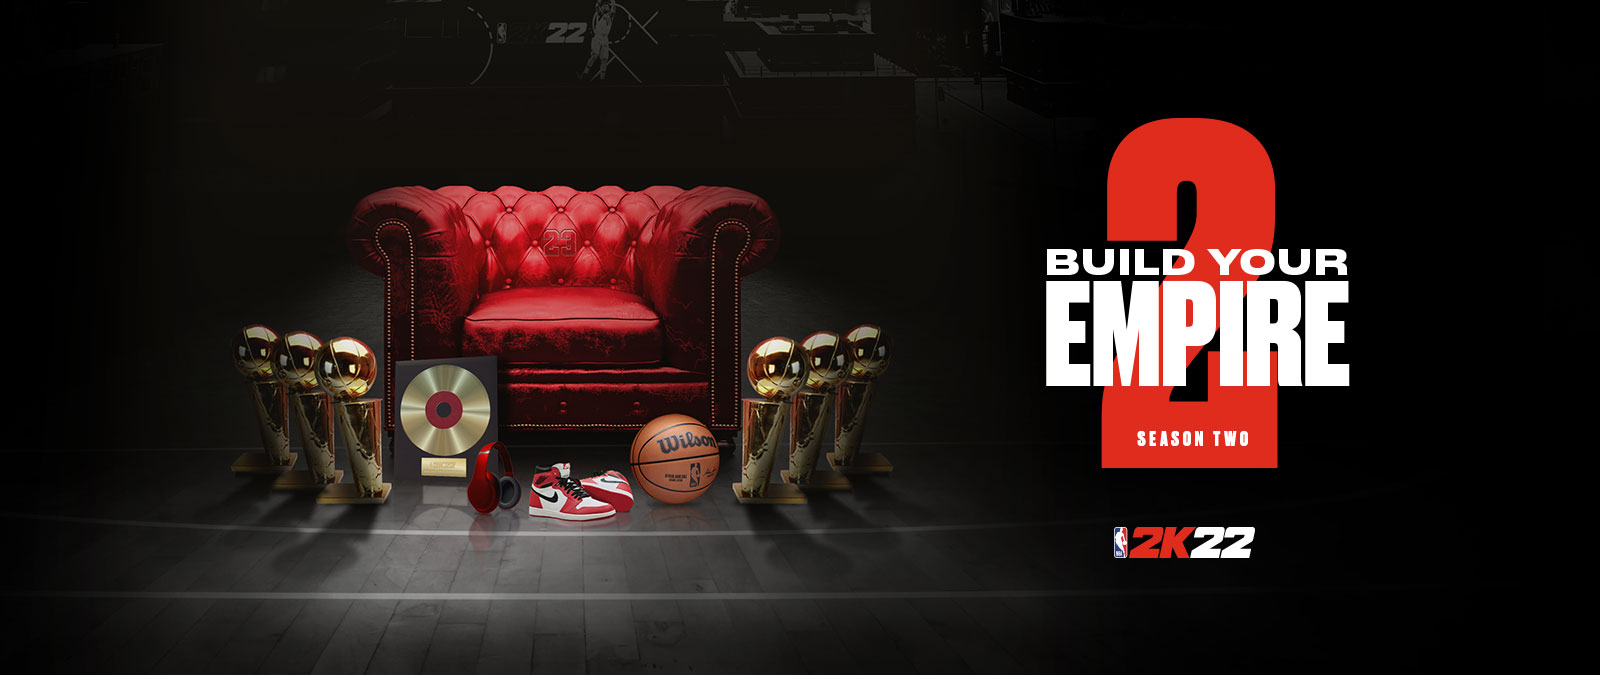 Bâtissez votre empire dans la saison 2 de NBA 2k22 : plusieurs trophées rassemblés autour dʼune chaise en cuir rouge.